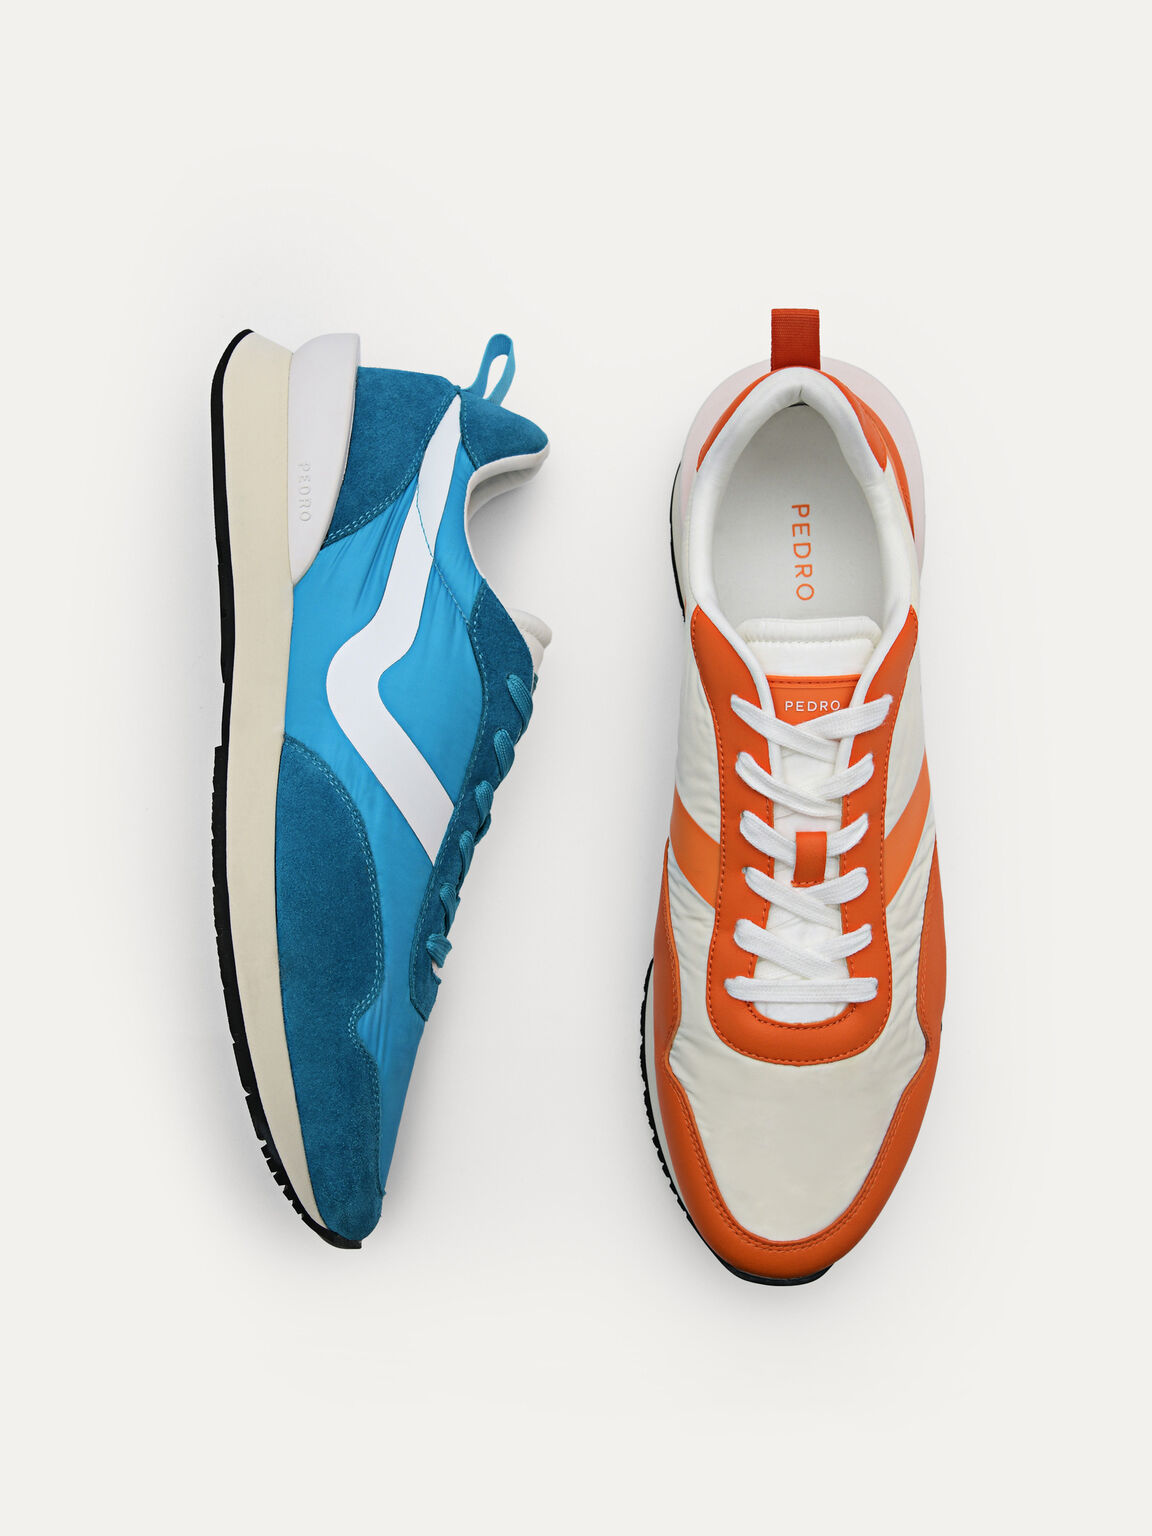 Swift Sneakers, Orange